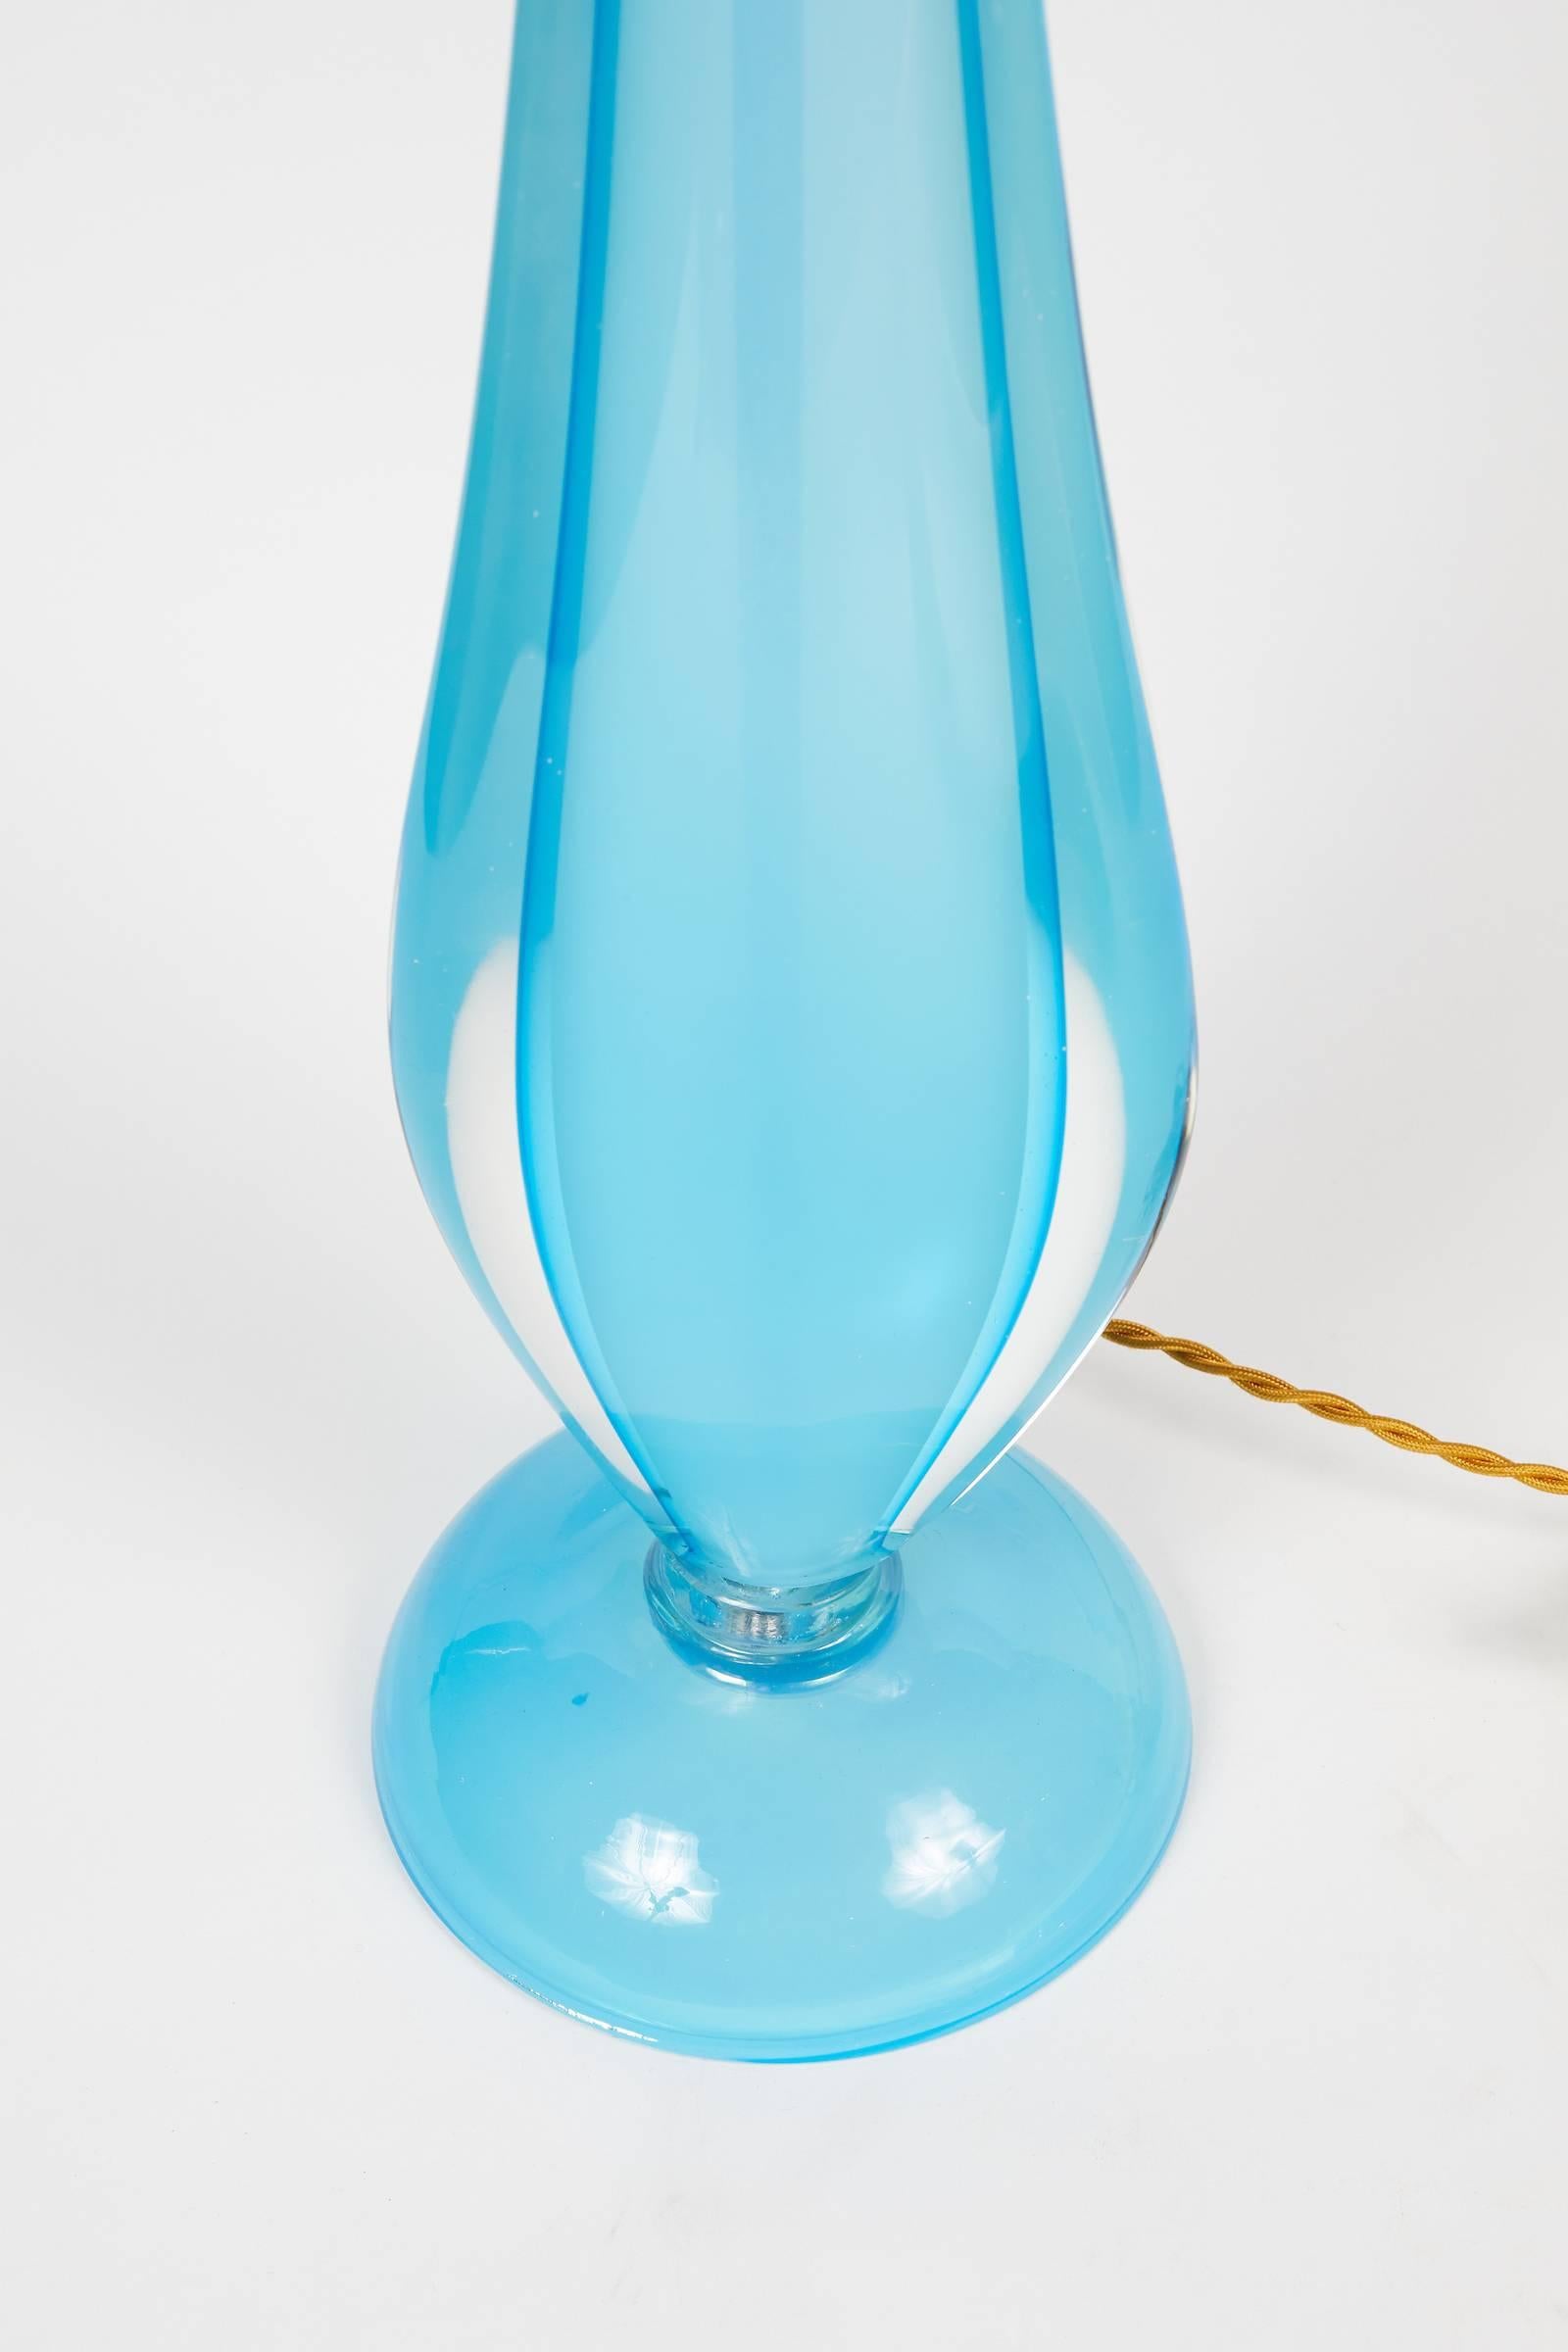 Elegante, langgestreckte italienische Murano-Tischlampe aus mundgeblasenem blauen Sommerso-Glas von Flavio Poli.
Die Höhe wird bis zum oberen Ende der Harfe gemessen.